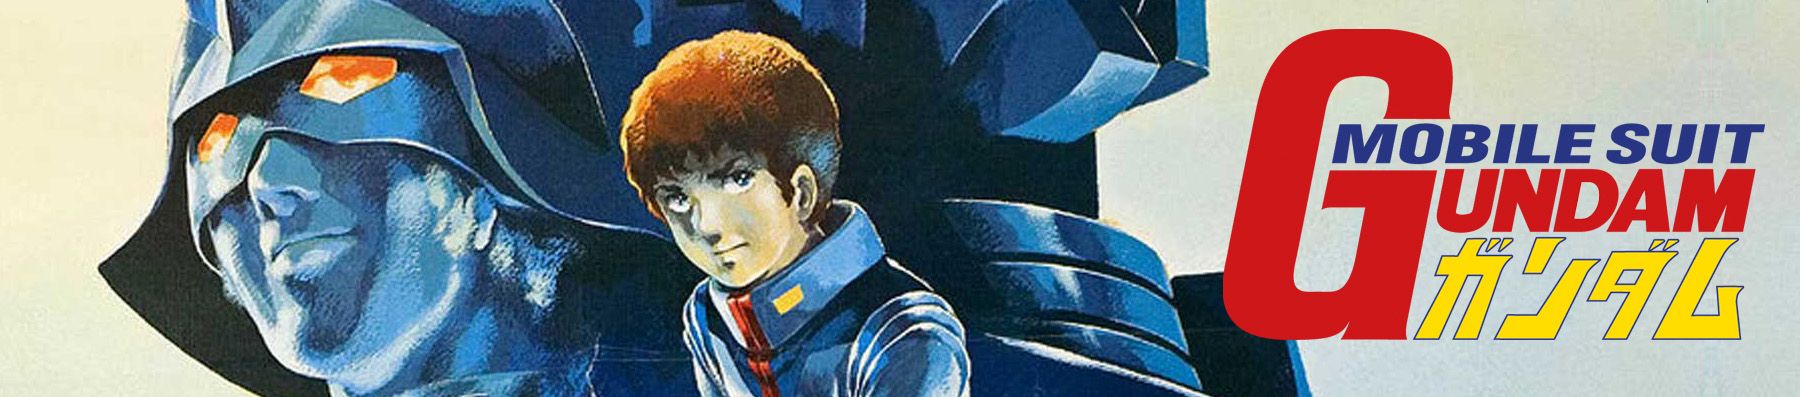 Dossier - Gundam : L'histoire des productions - Partie 1 - La première série et ses films